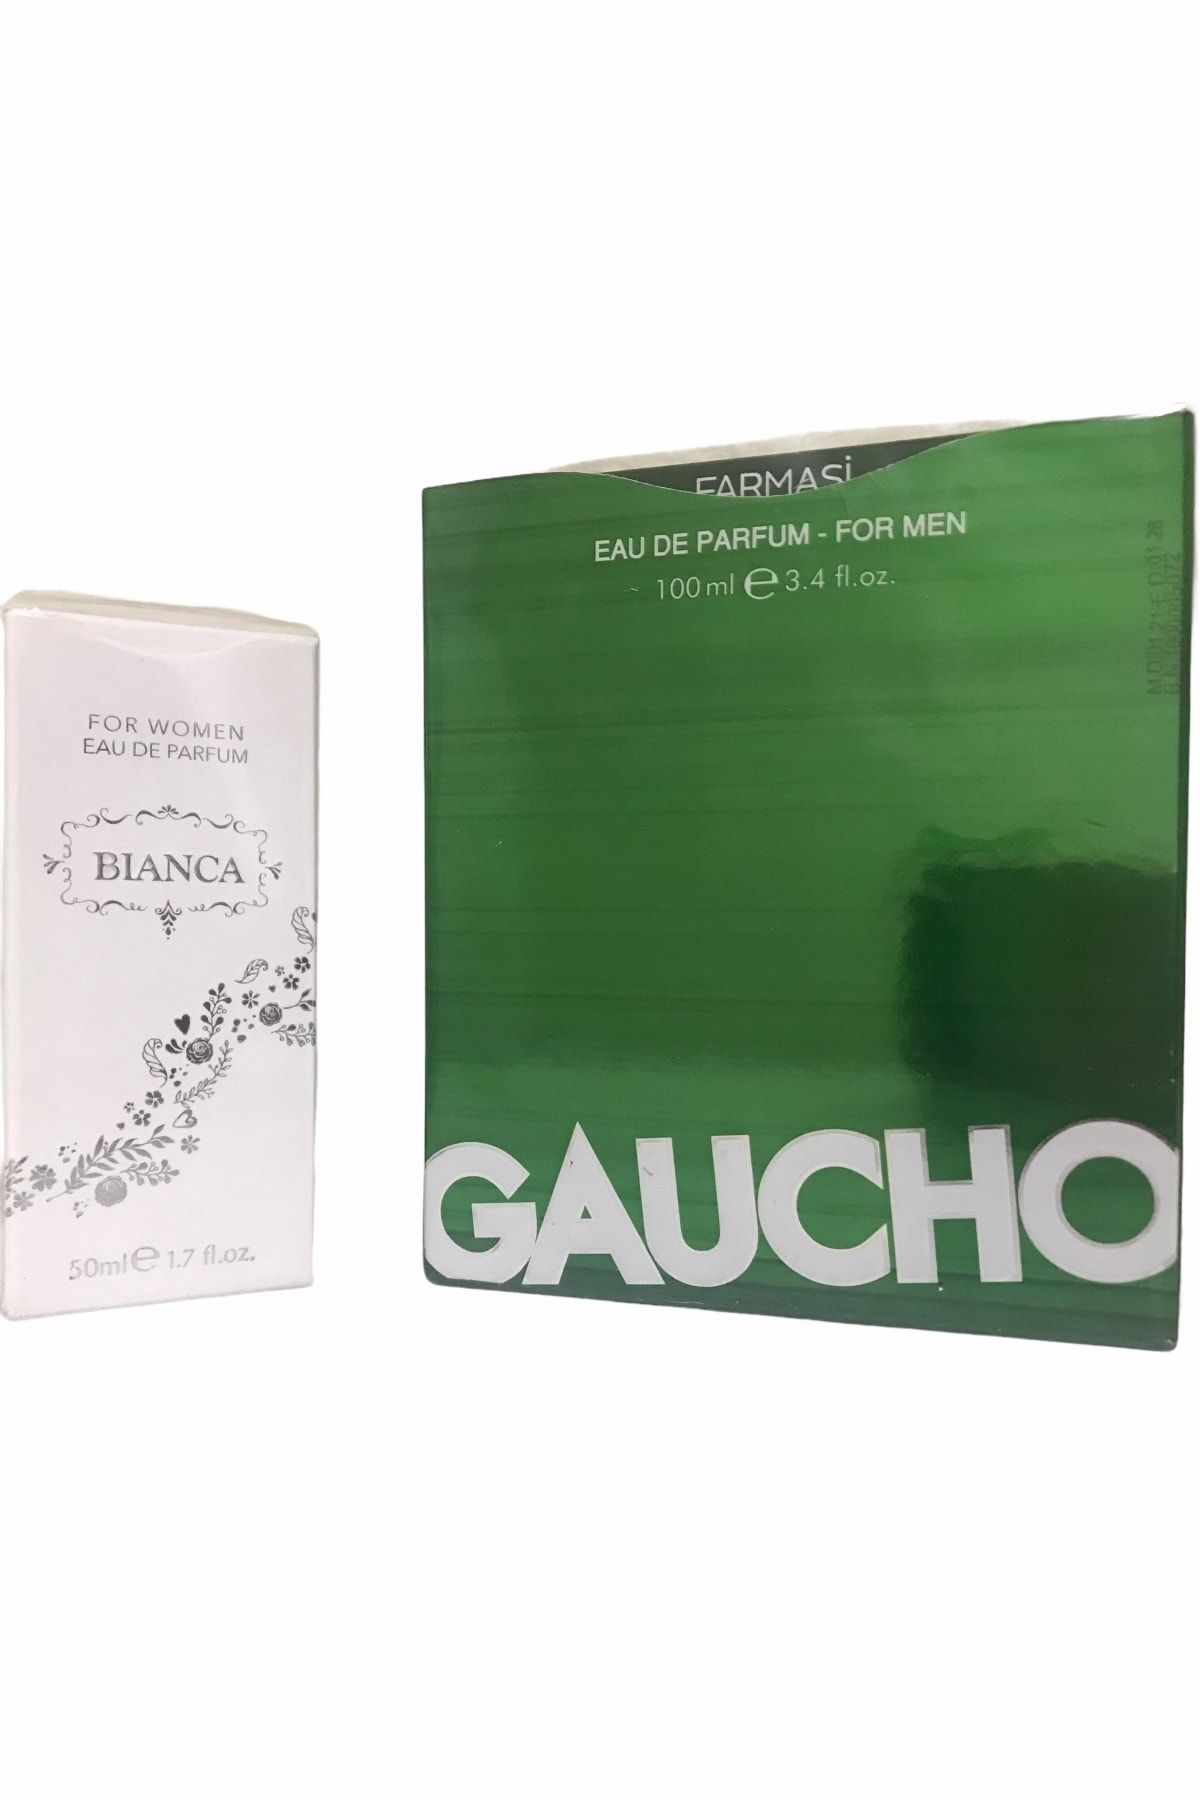 Farmasi Gaucho Erkek Parfüm Ve Kadın Bianca Parfüm